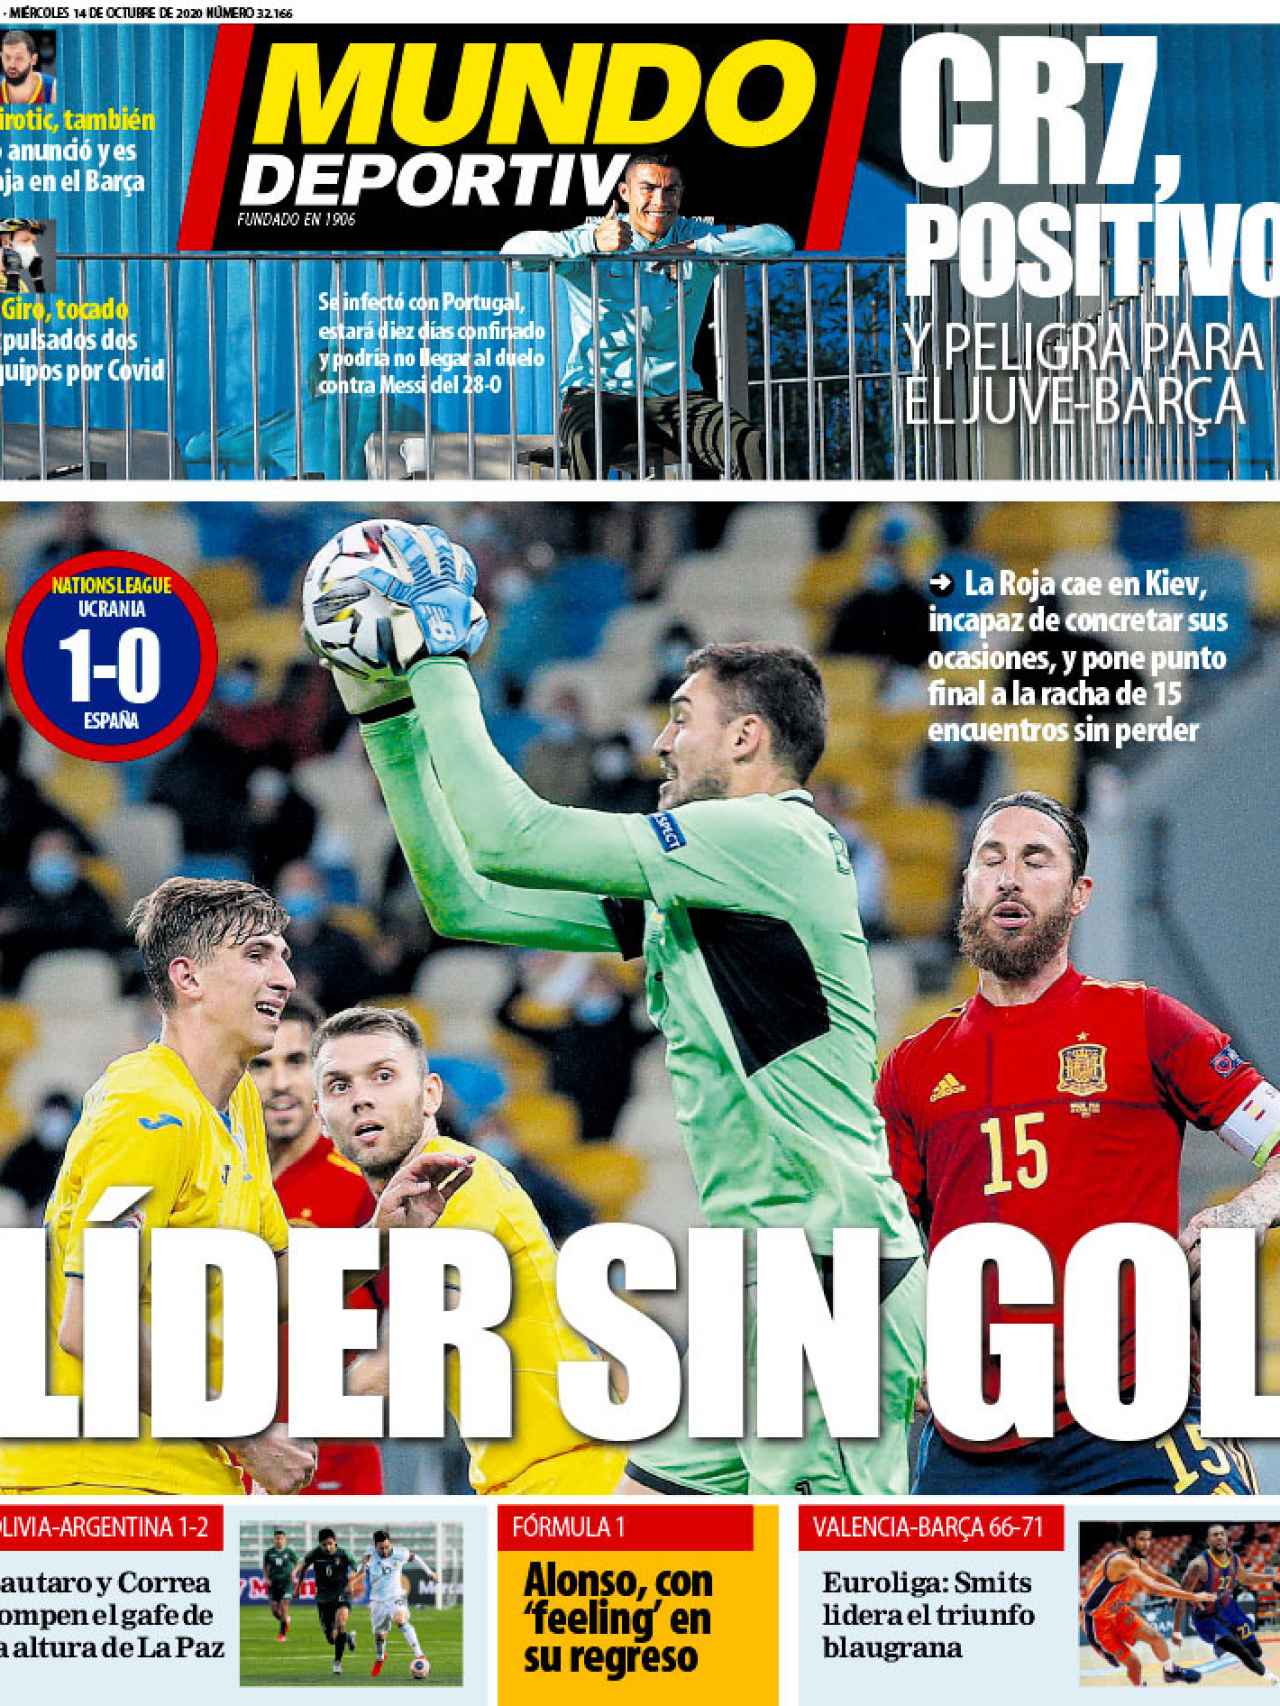 La portada del diario Mundo Deportivo (14/10/2020)